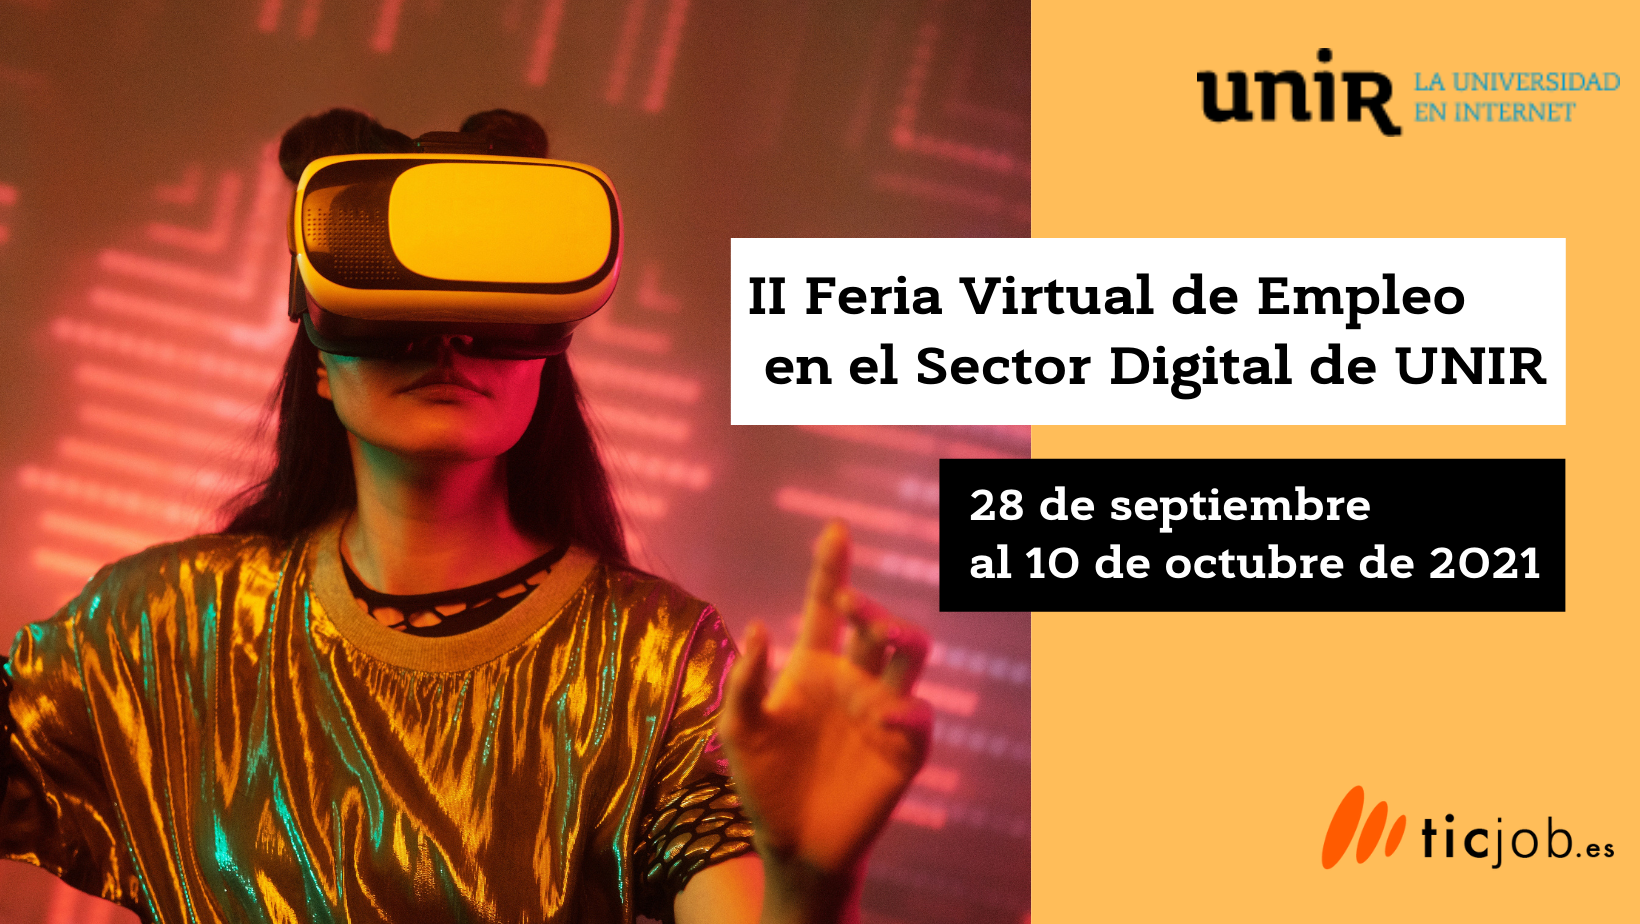 Participa en la II Feria Virtual de Empleo en el Sector Digital Unir